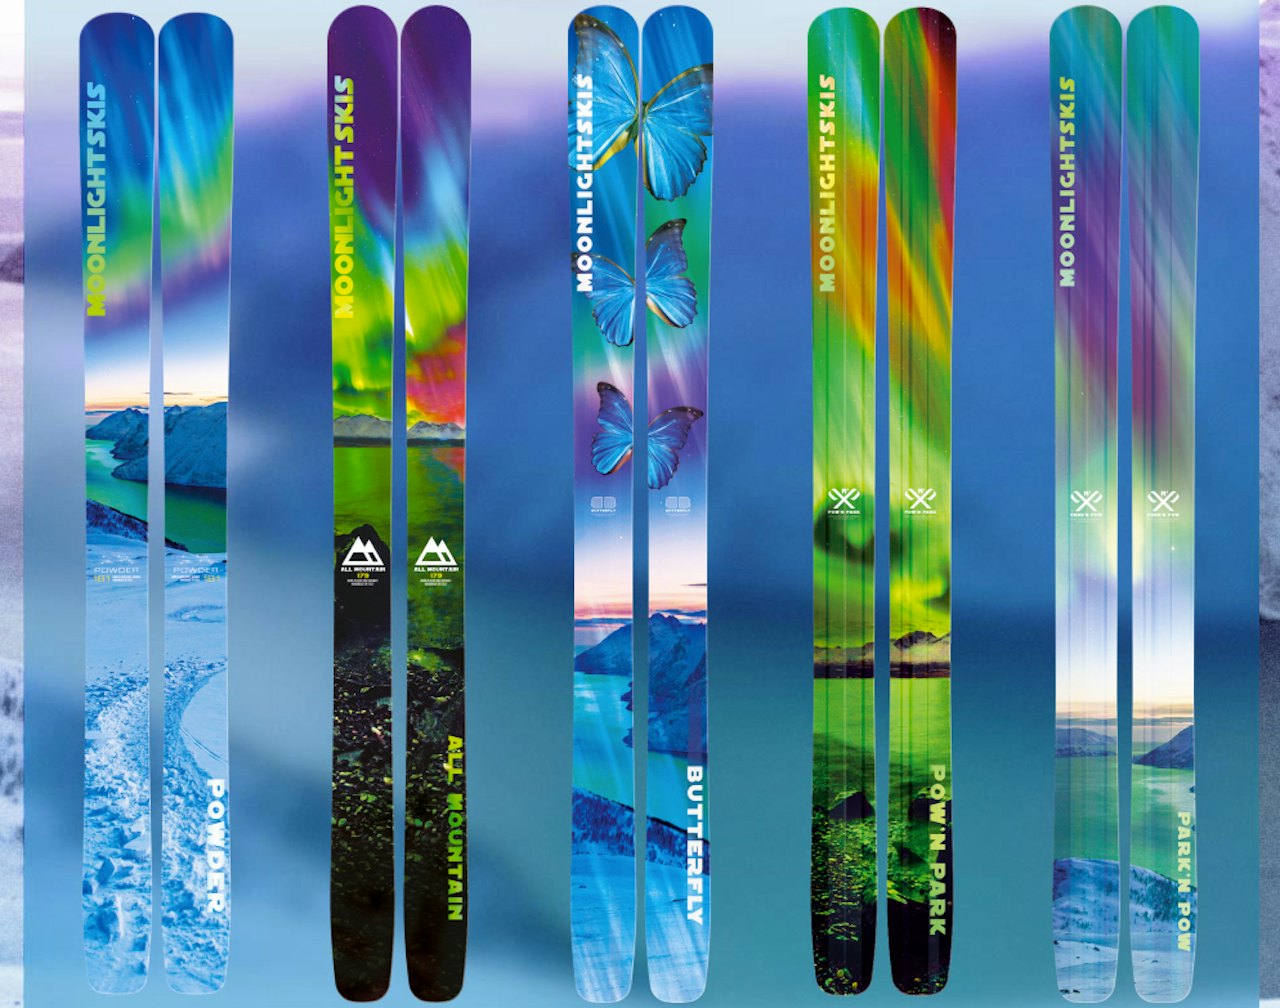 MÅNELYST: Dette er de norskdesigna skiene som skal være blant de letteste, brede skiene som er å oppdrive.